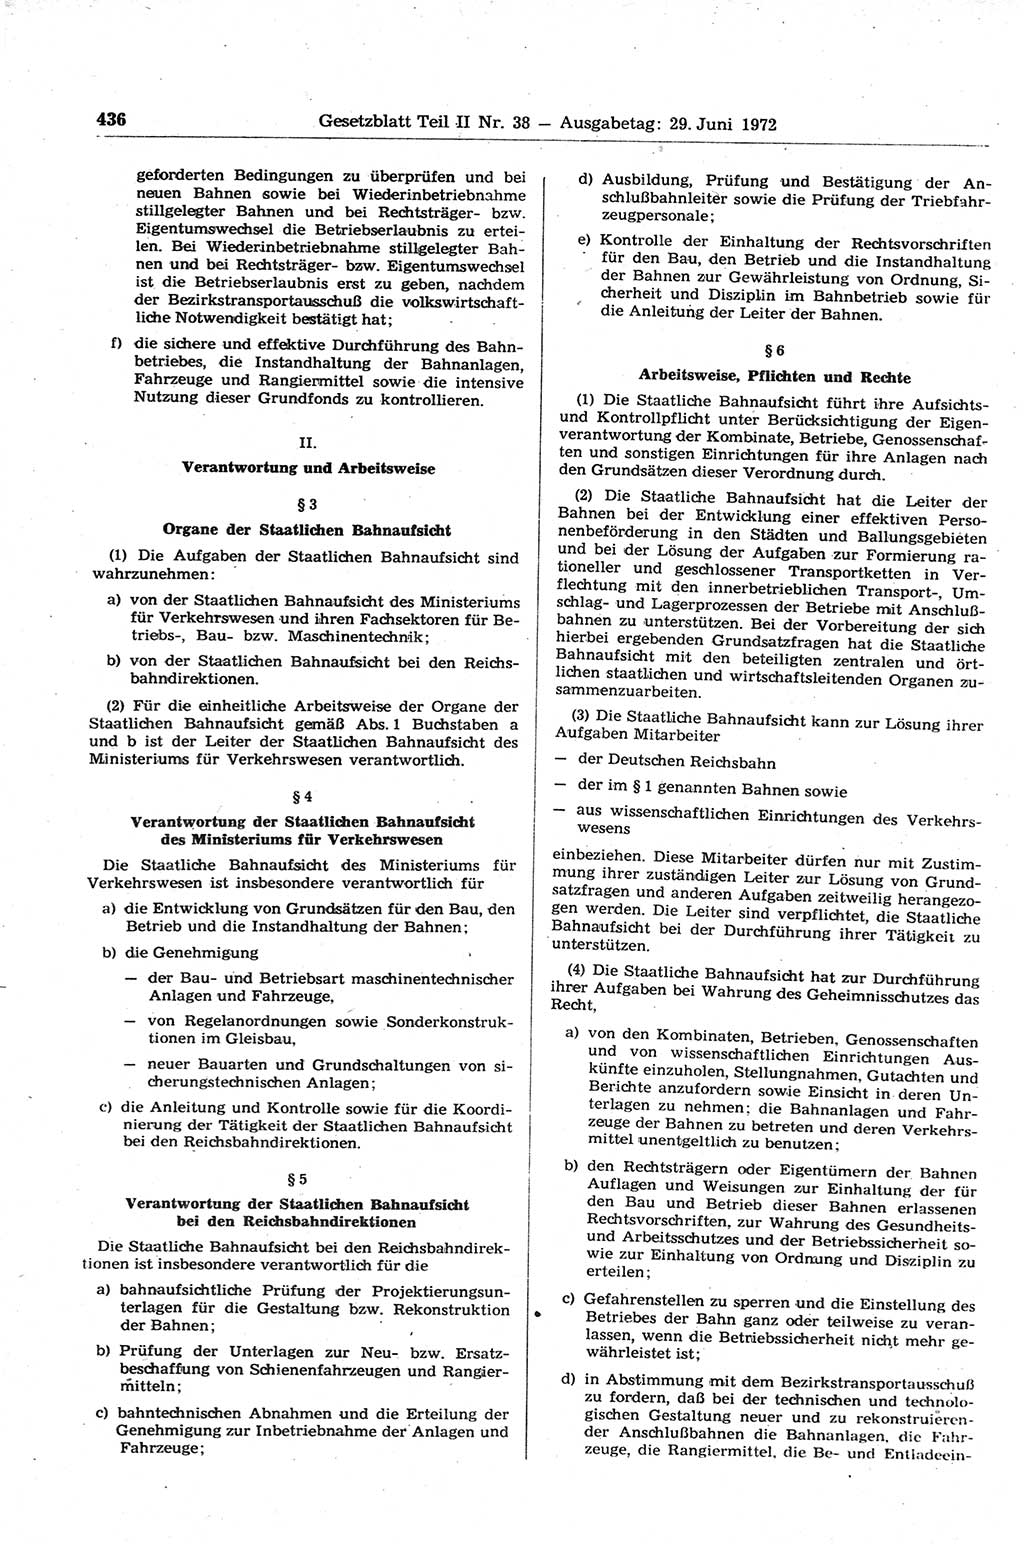 Gesetzblatt (GBl.) der Deutschen Demokratischen Republik (DDR) Teil ⅠⅠ 1972, Seite 436 (GBl. DDR ⅠⅠ 1972, S. 436)